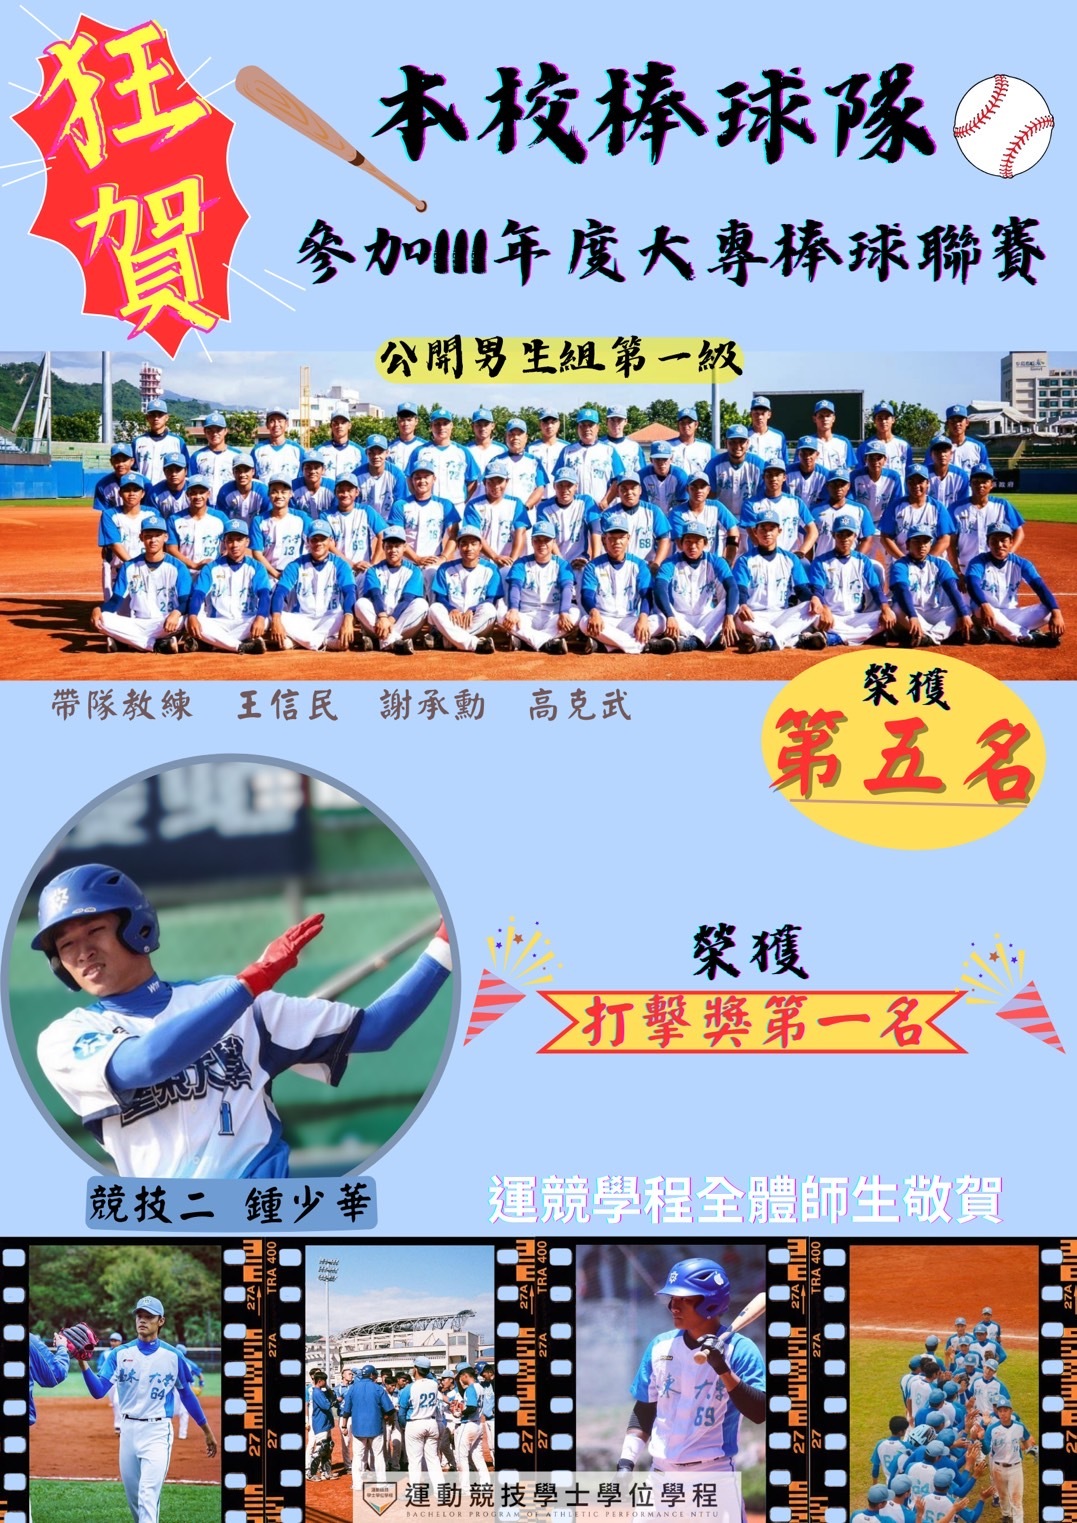 恭喜臺東大學棒球隊榮獲大專盃公開組一級第五名!少華~榮獲個人獎項!